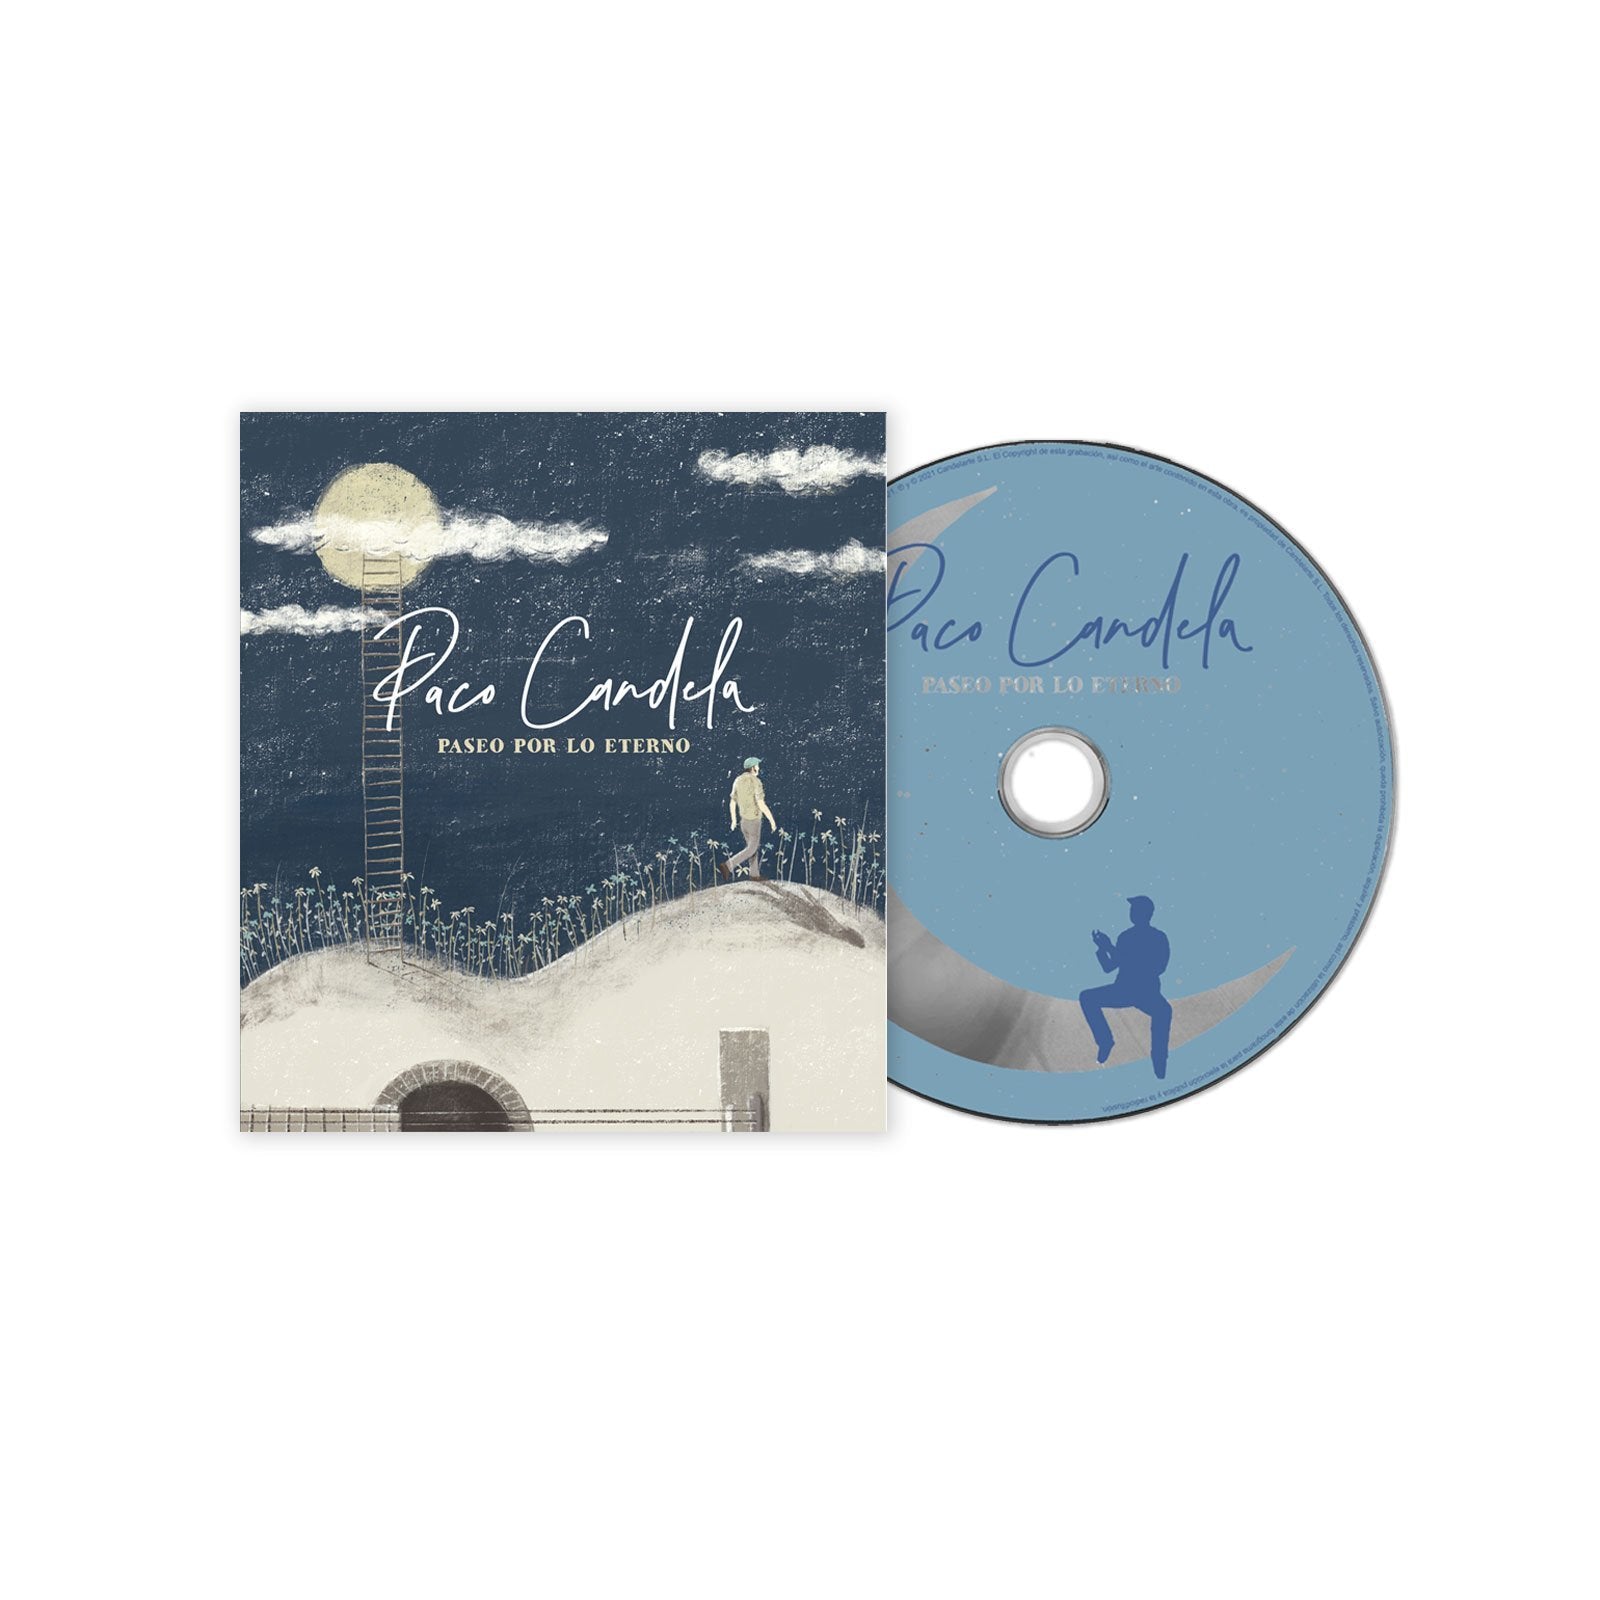 Preludio Psicologicamente Cenagal Paco Candela - CD Digifile Deluxe “Paseo Por Lo Eterno” – The Fandation